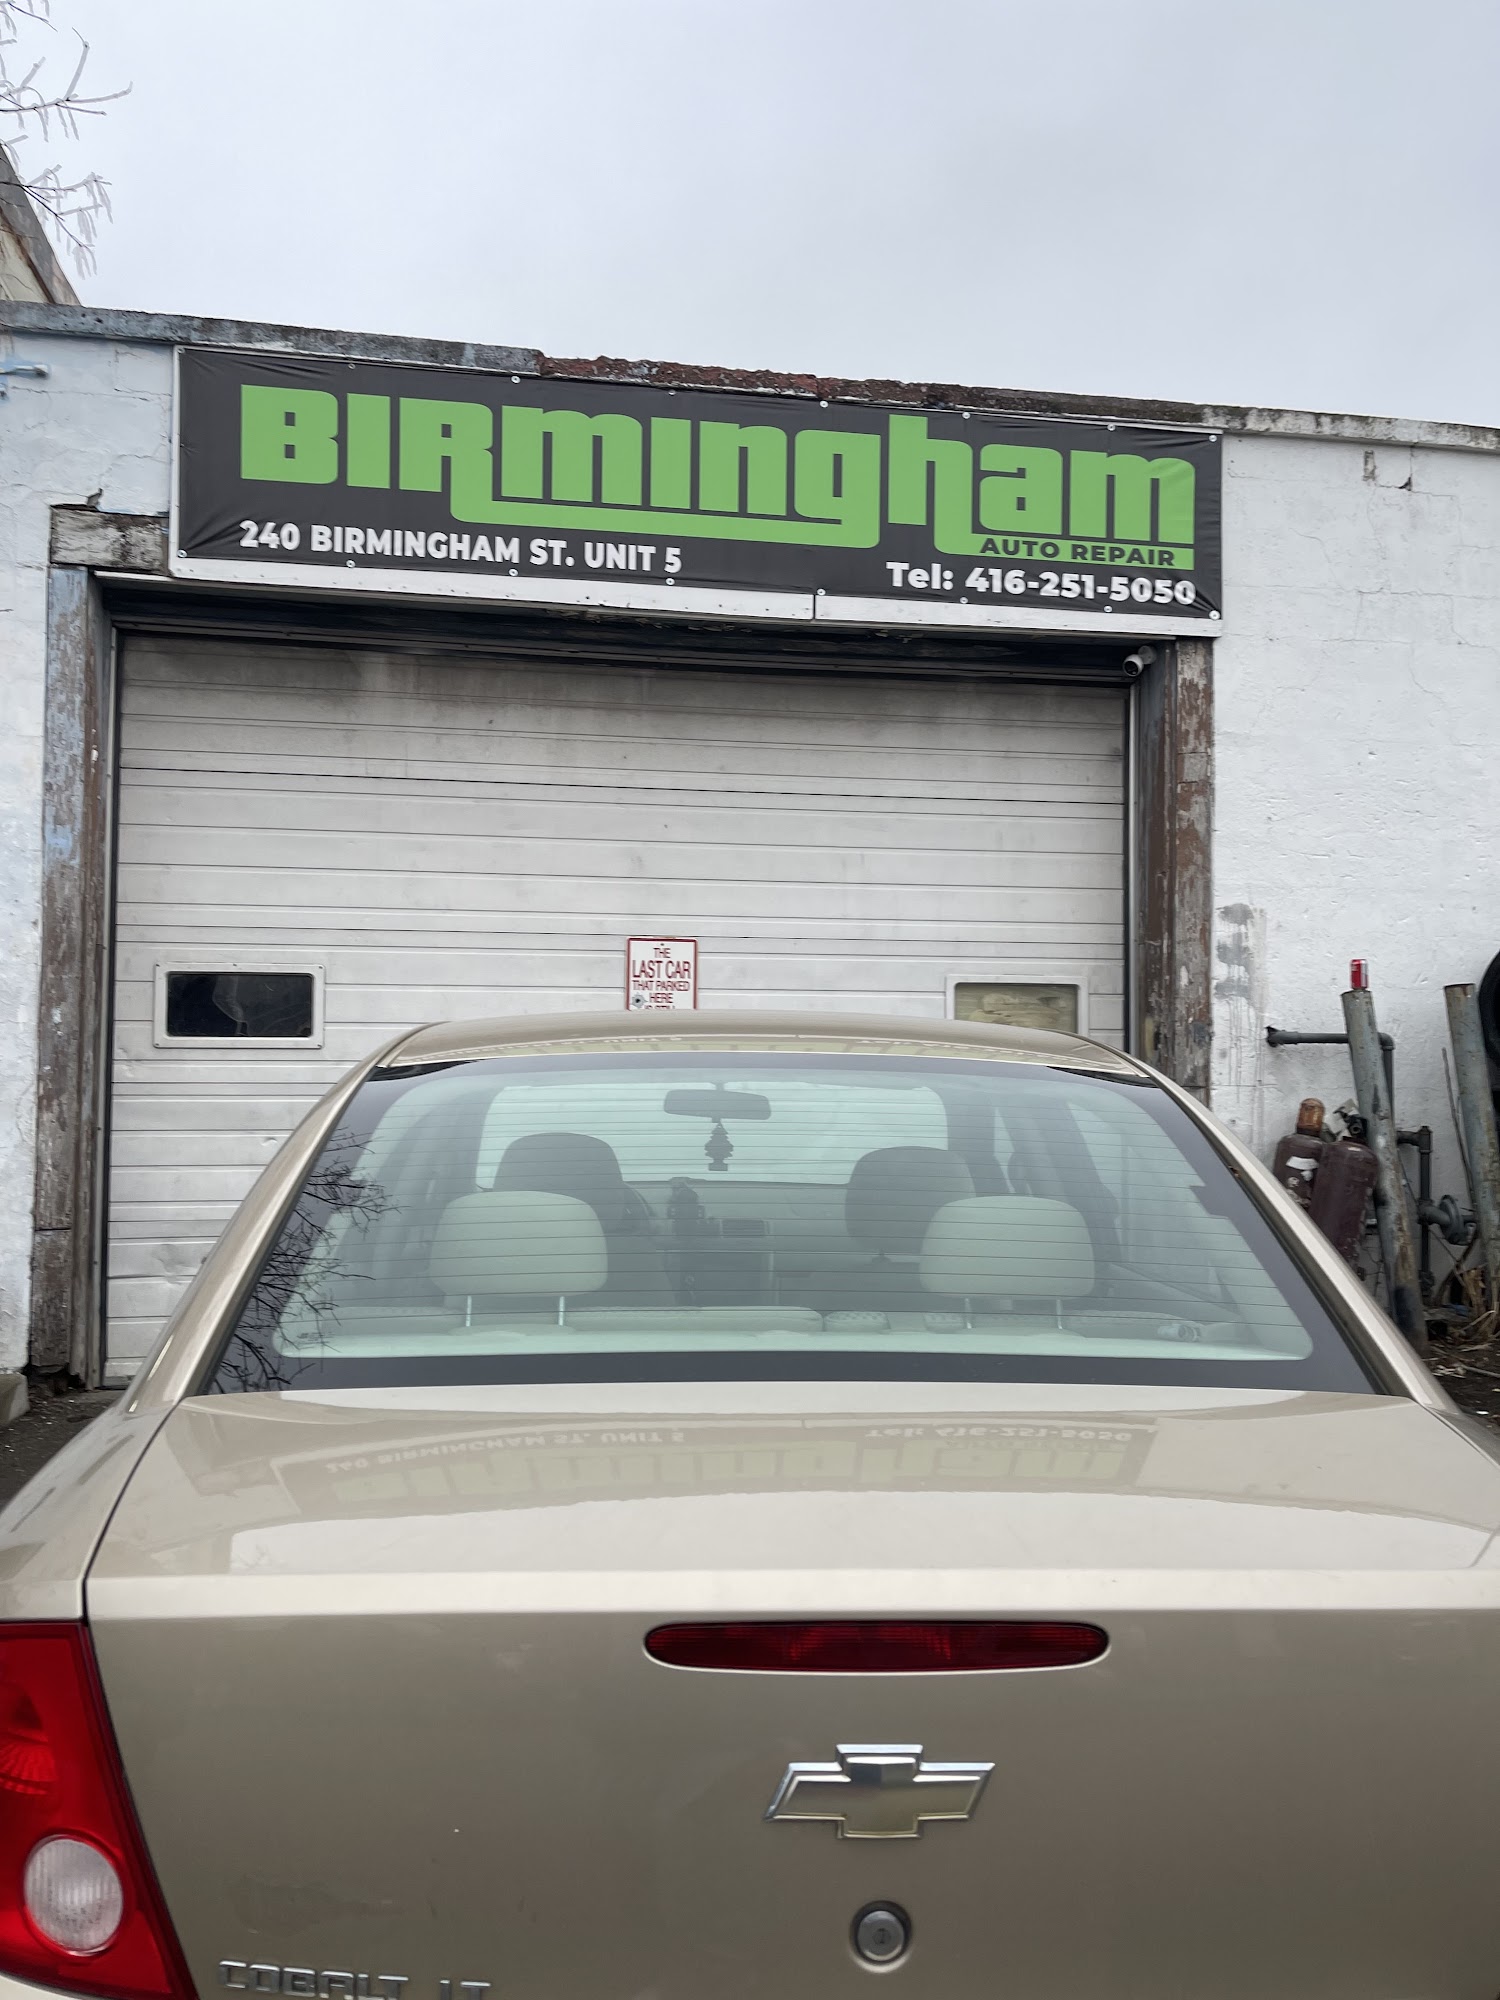 Birmingham Auto Repair